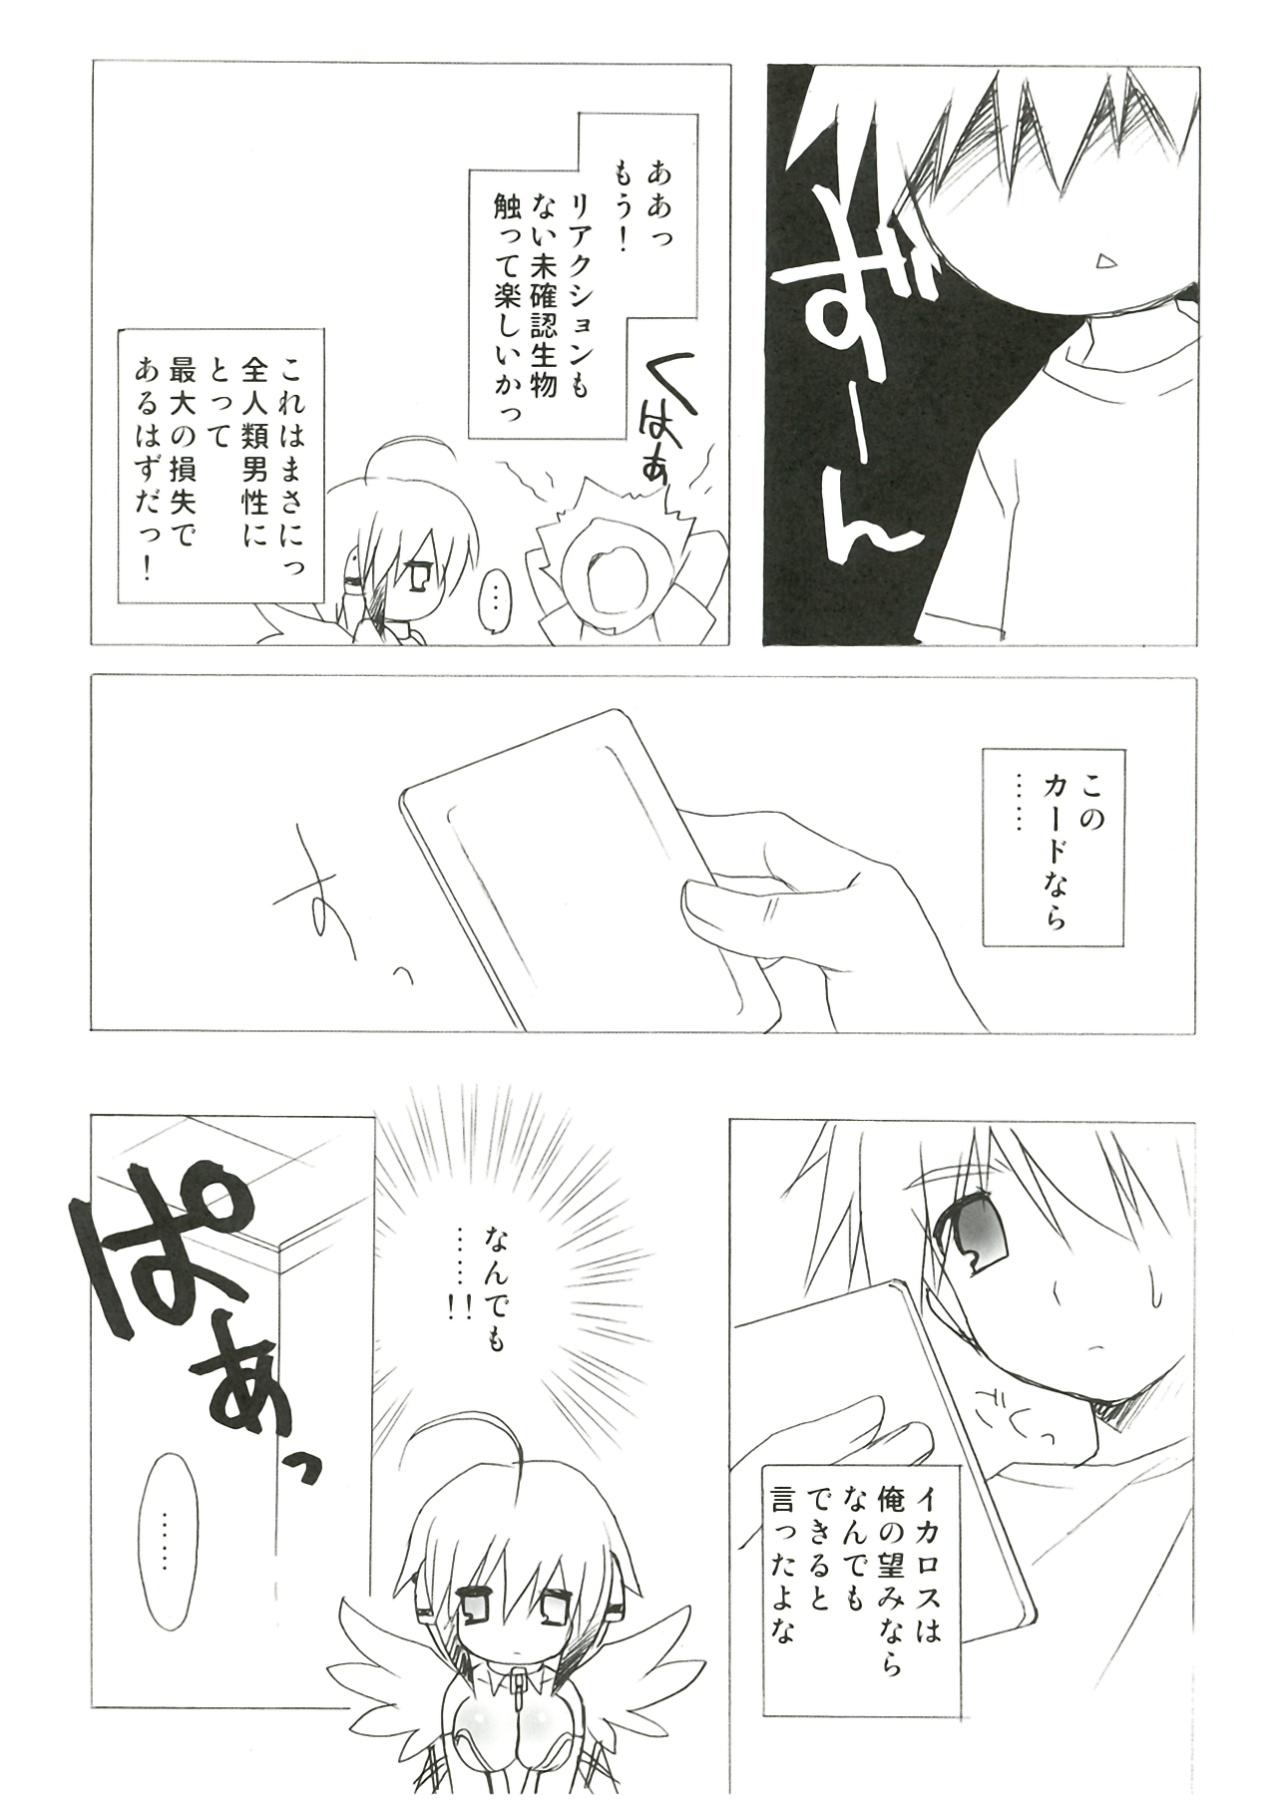 Jockstrap Kokoro no Otoshimono - Sora no otoshimono Rabuda - Page 10